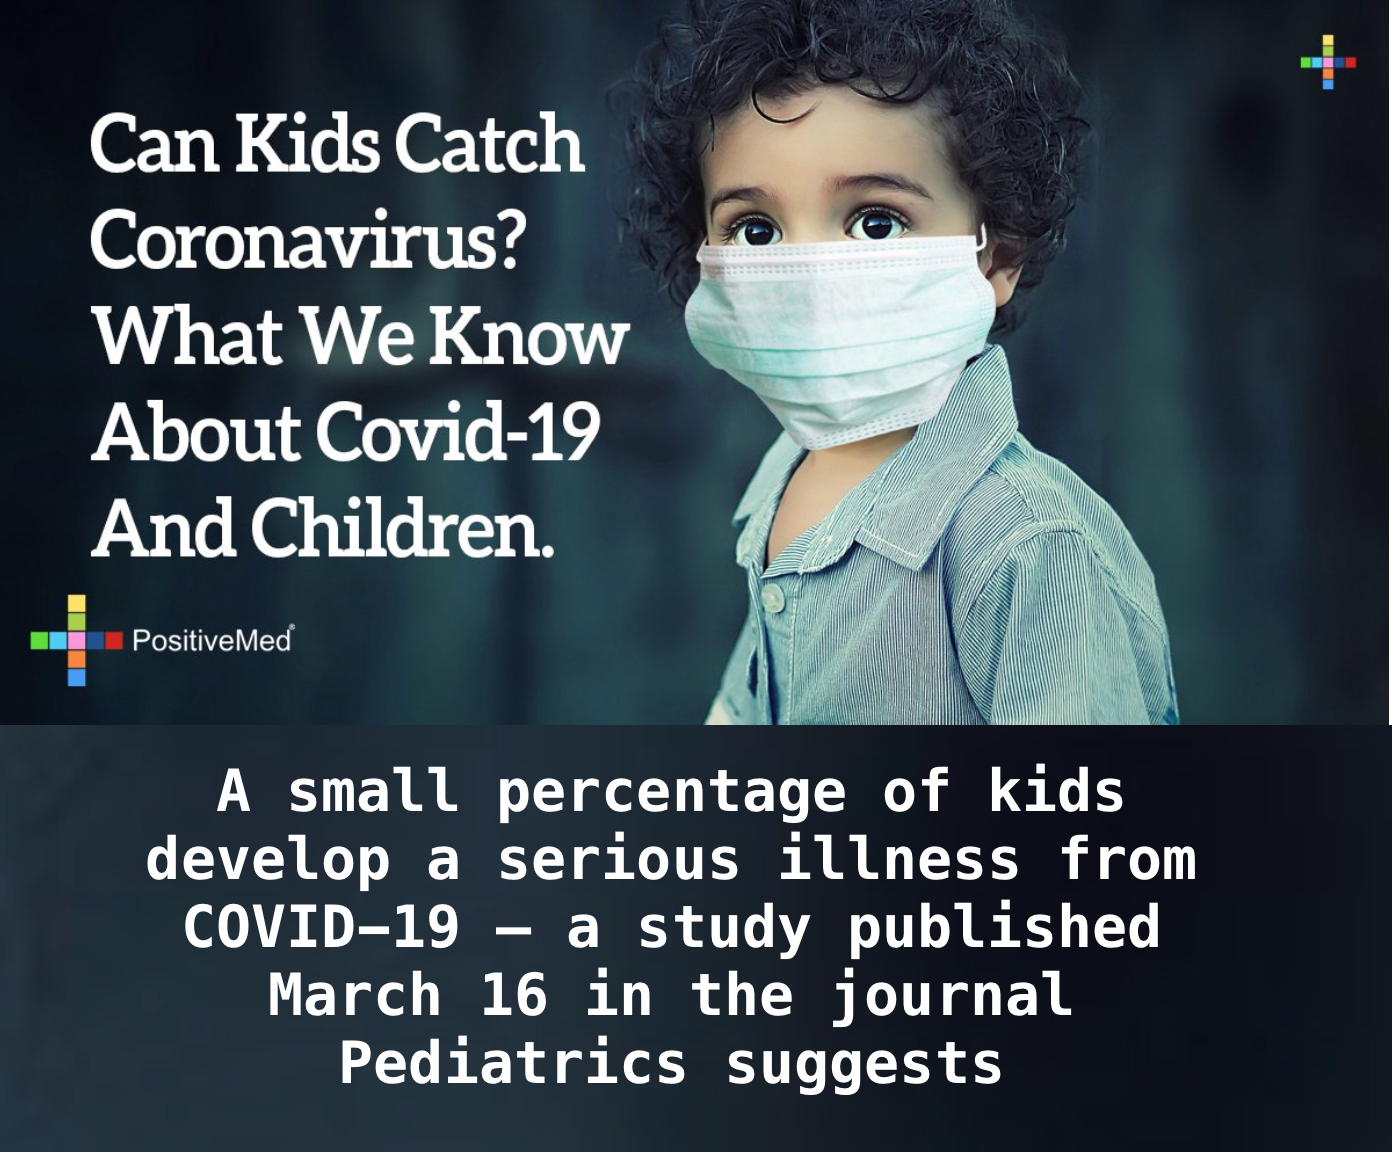 Can Kids Catch Coronavirus? What Do We Know About Children And Coronavirus?